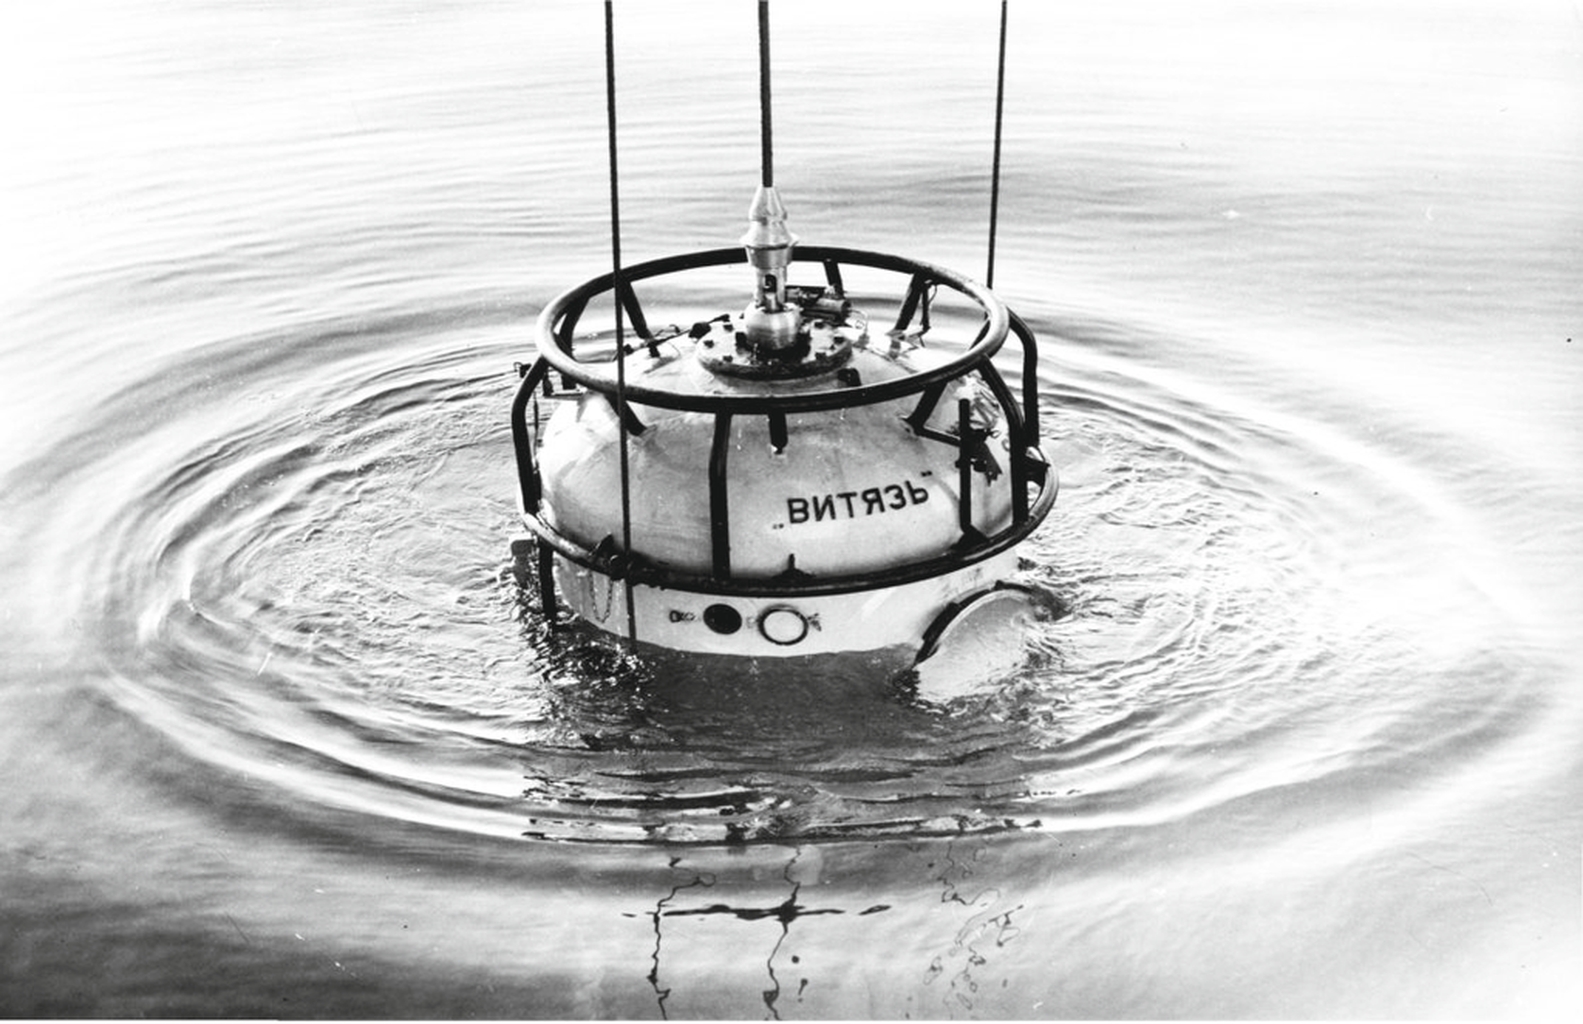 Спуск водолазного колокола с борта научно-исследовательского судна «Витязь». Атлантический океан, 1982 г.